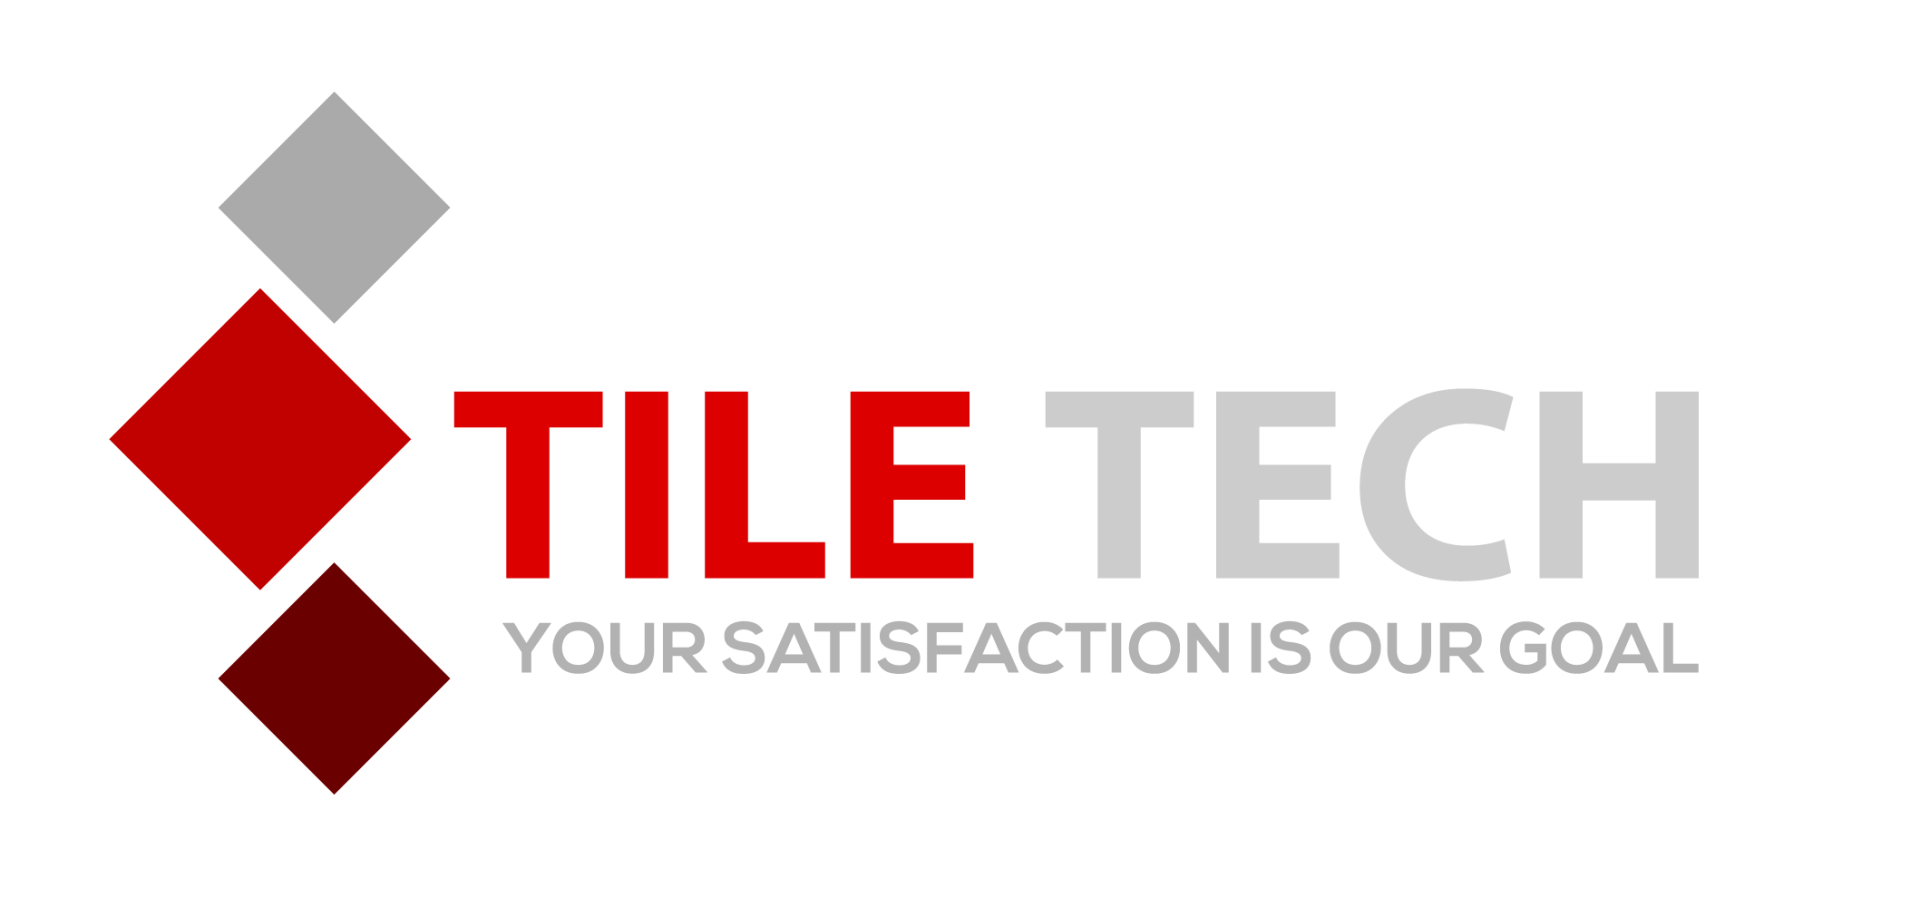 Tile Contractor in Colorado Springs, CO | Tile Tech